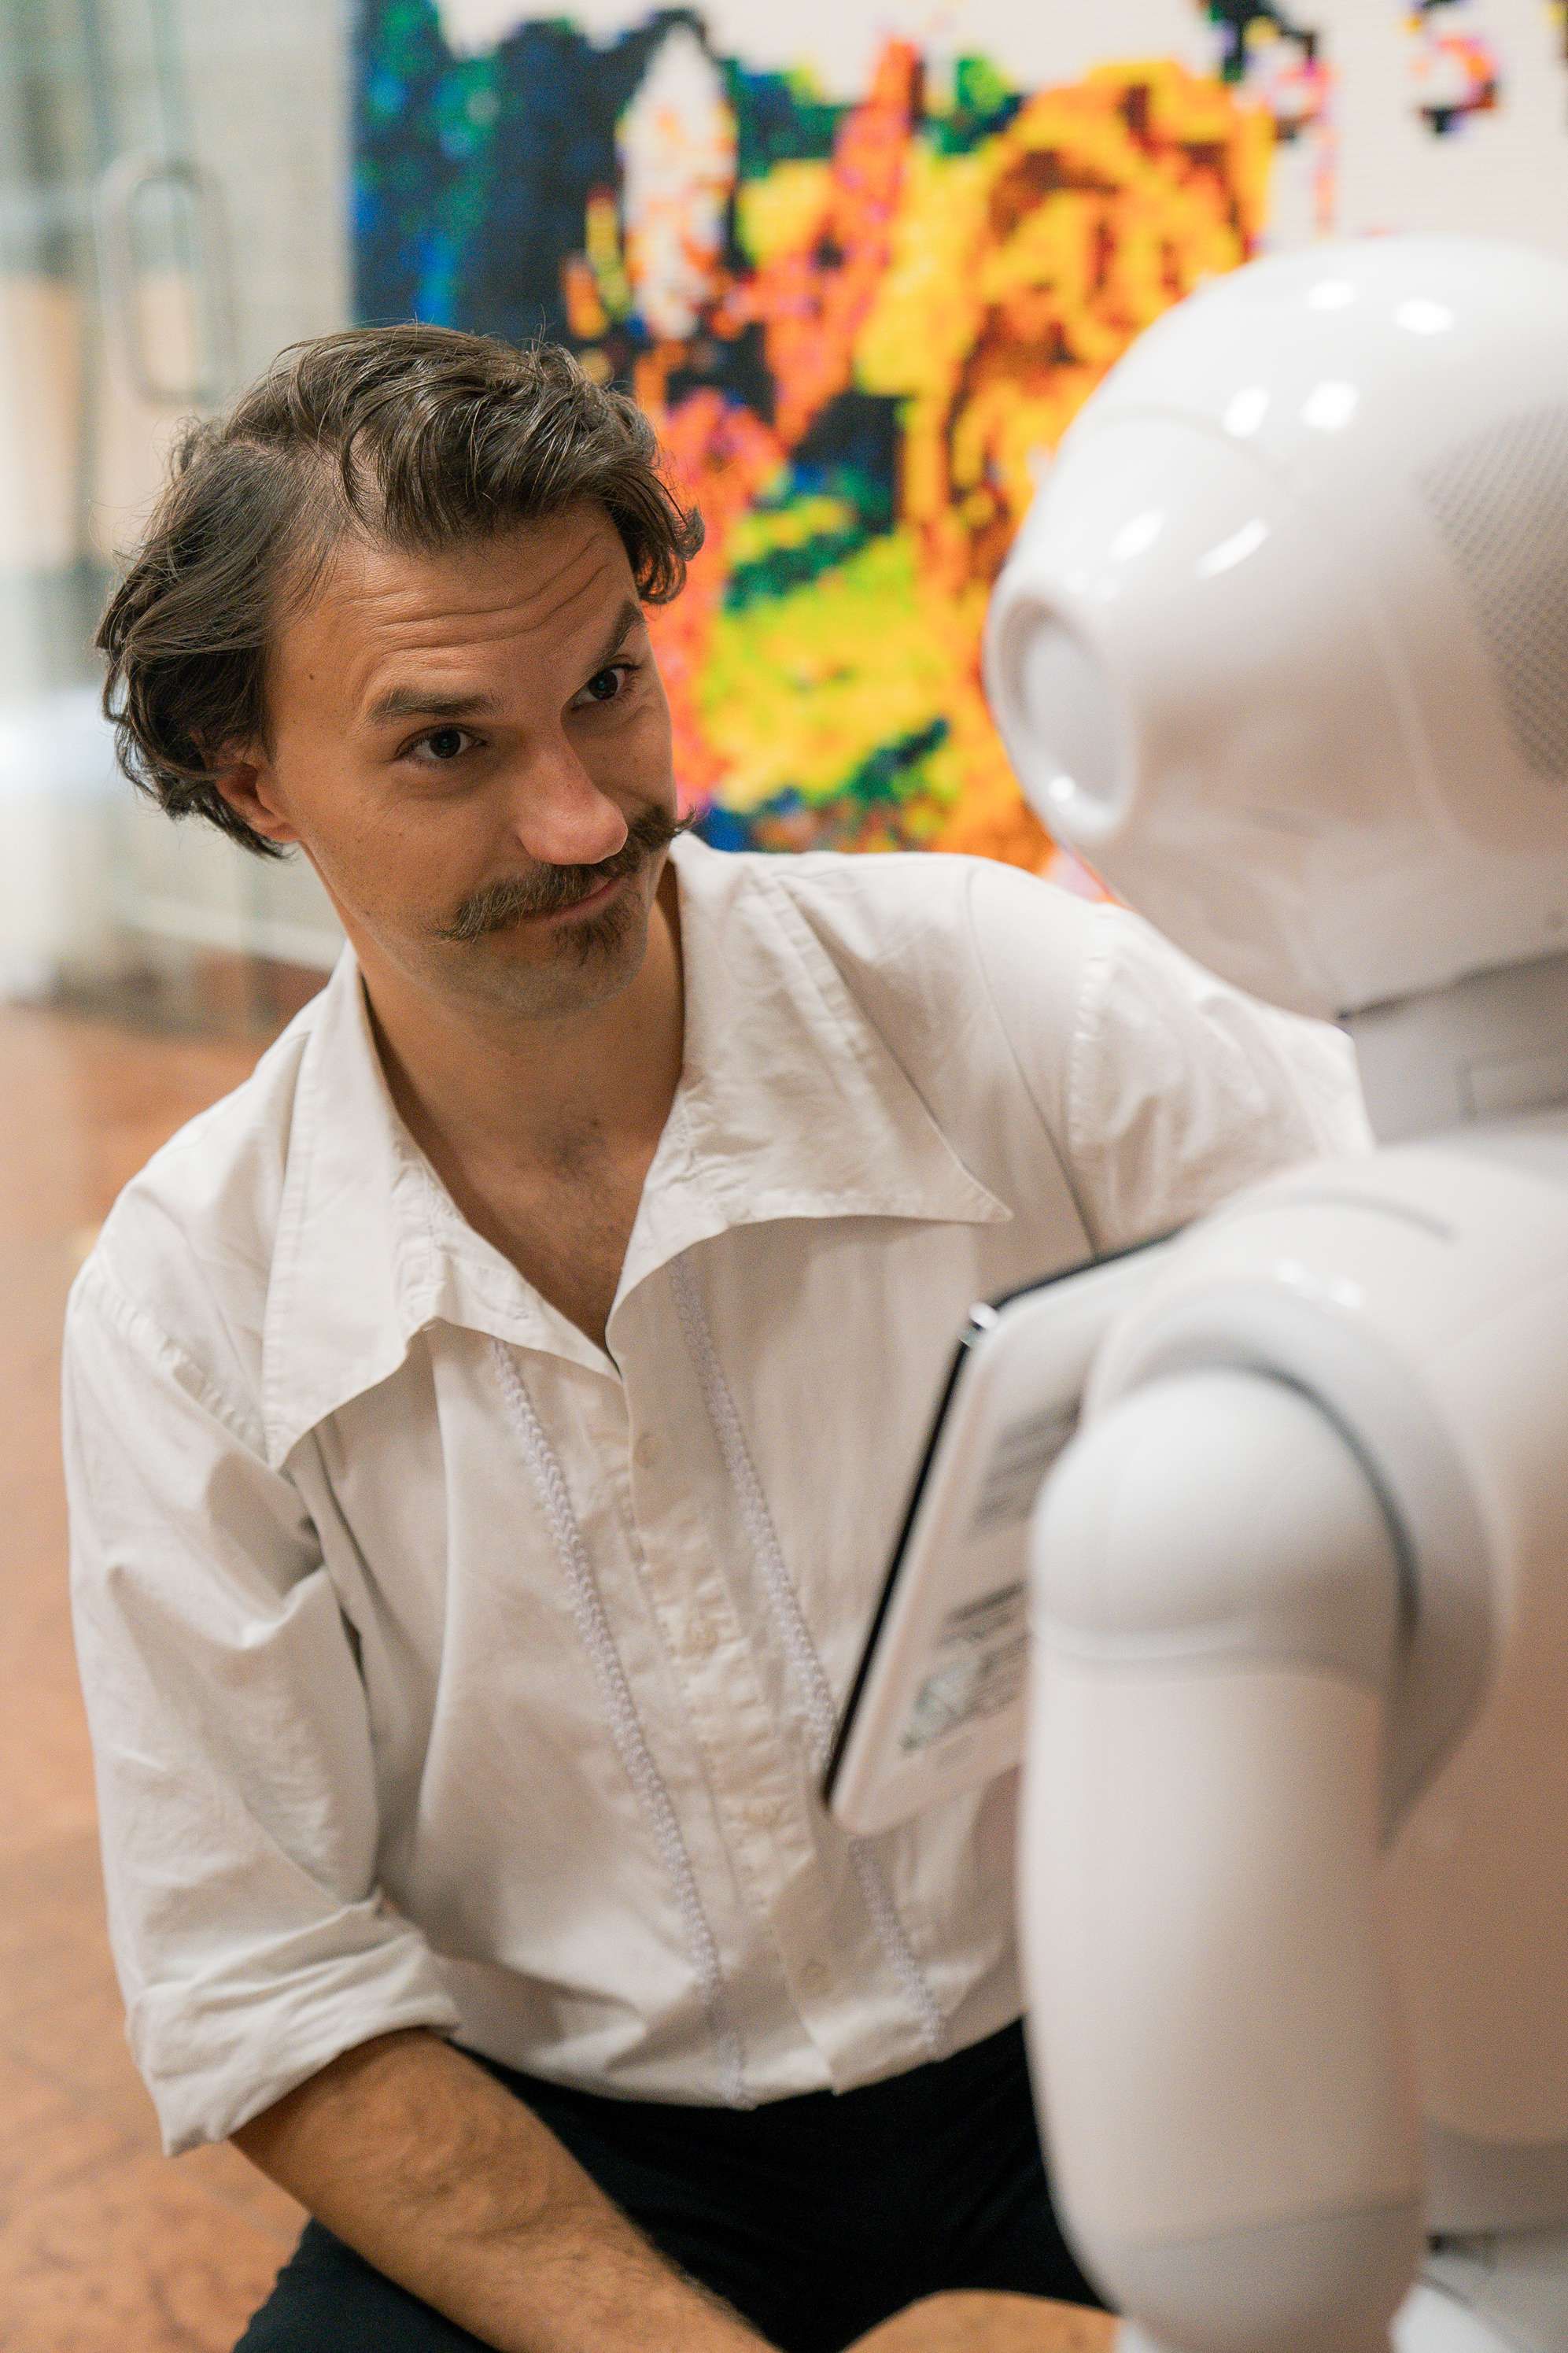 Humanoid robotot alkalmaz a megyei önkormányzat Bács-Kiskunban